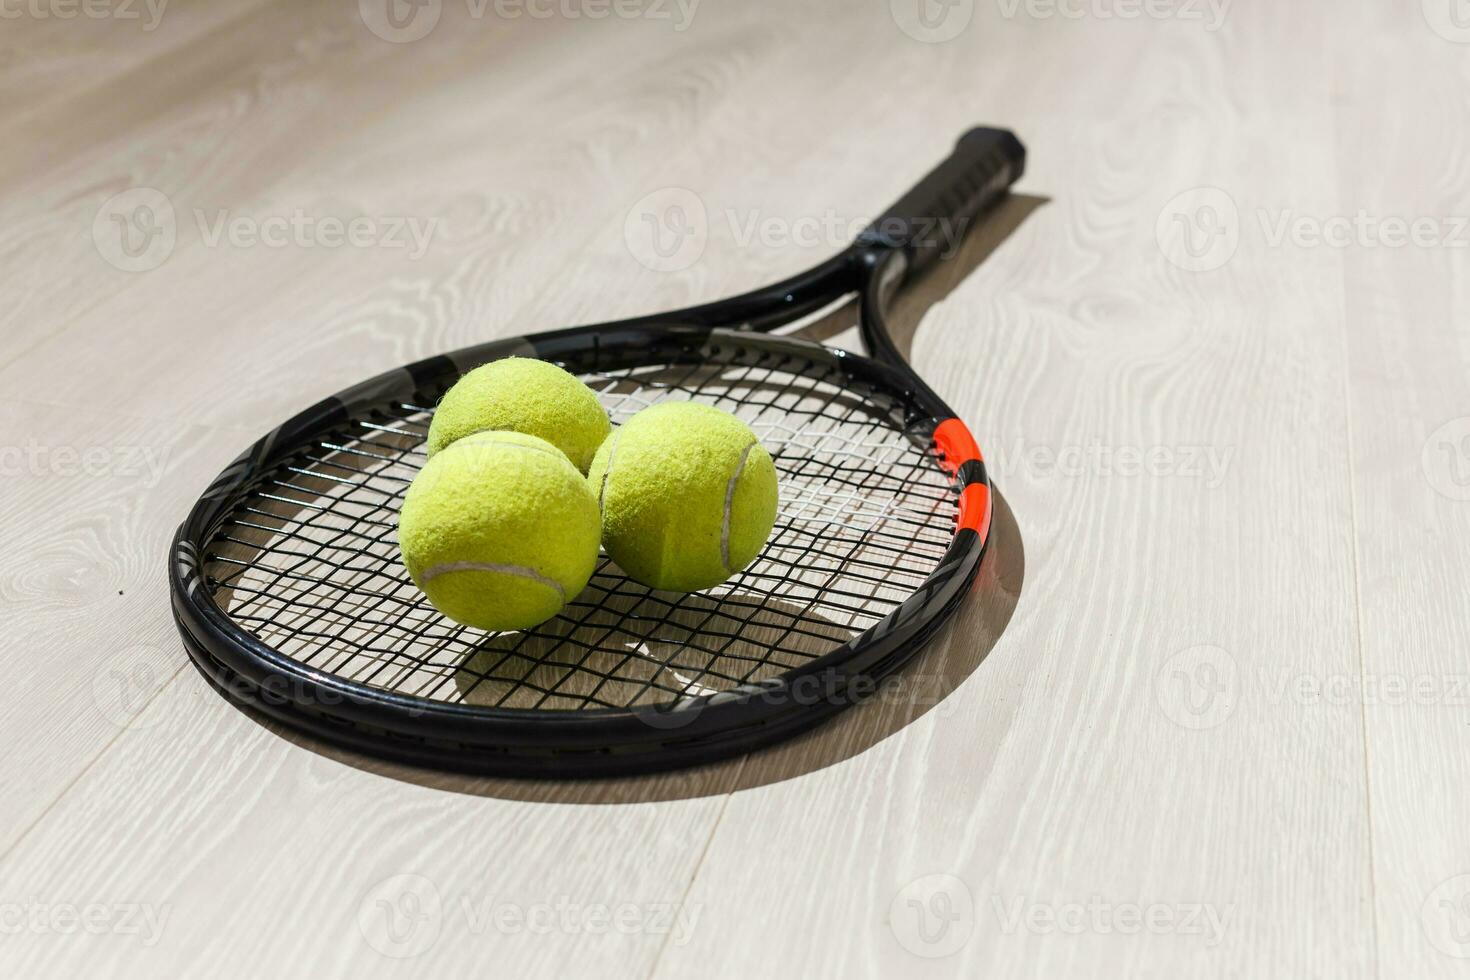 tennis concetto con il palle e racchetta foto